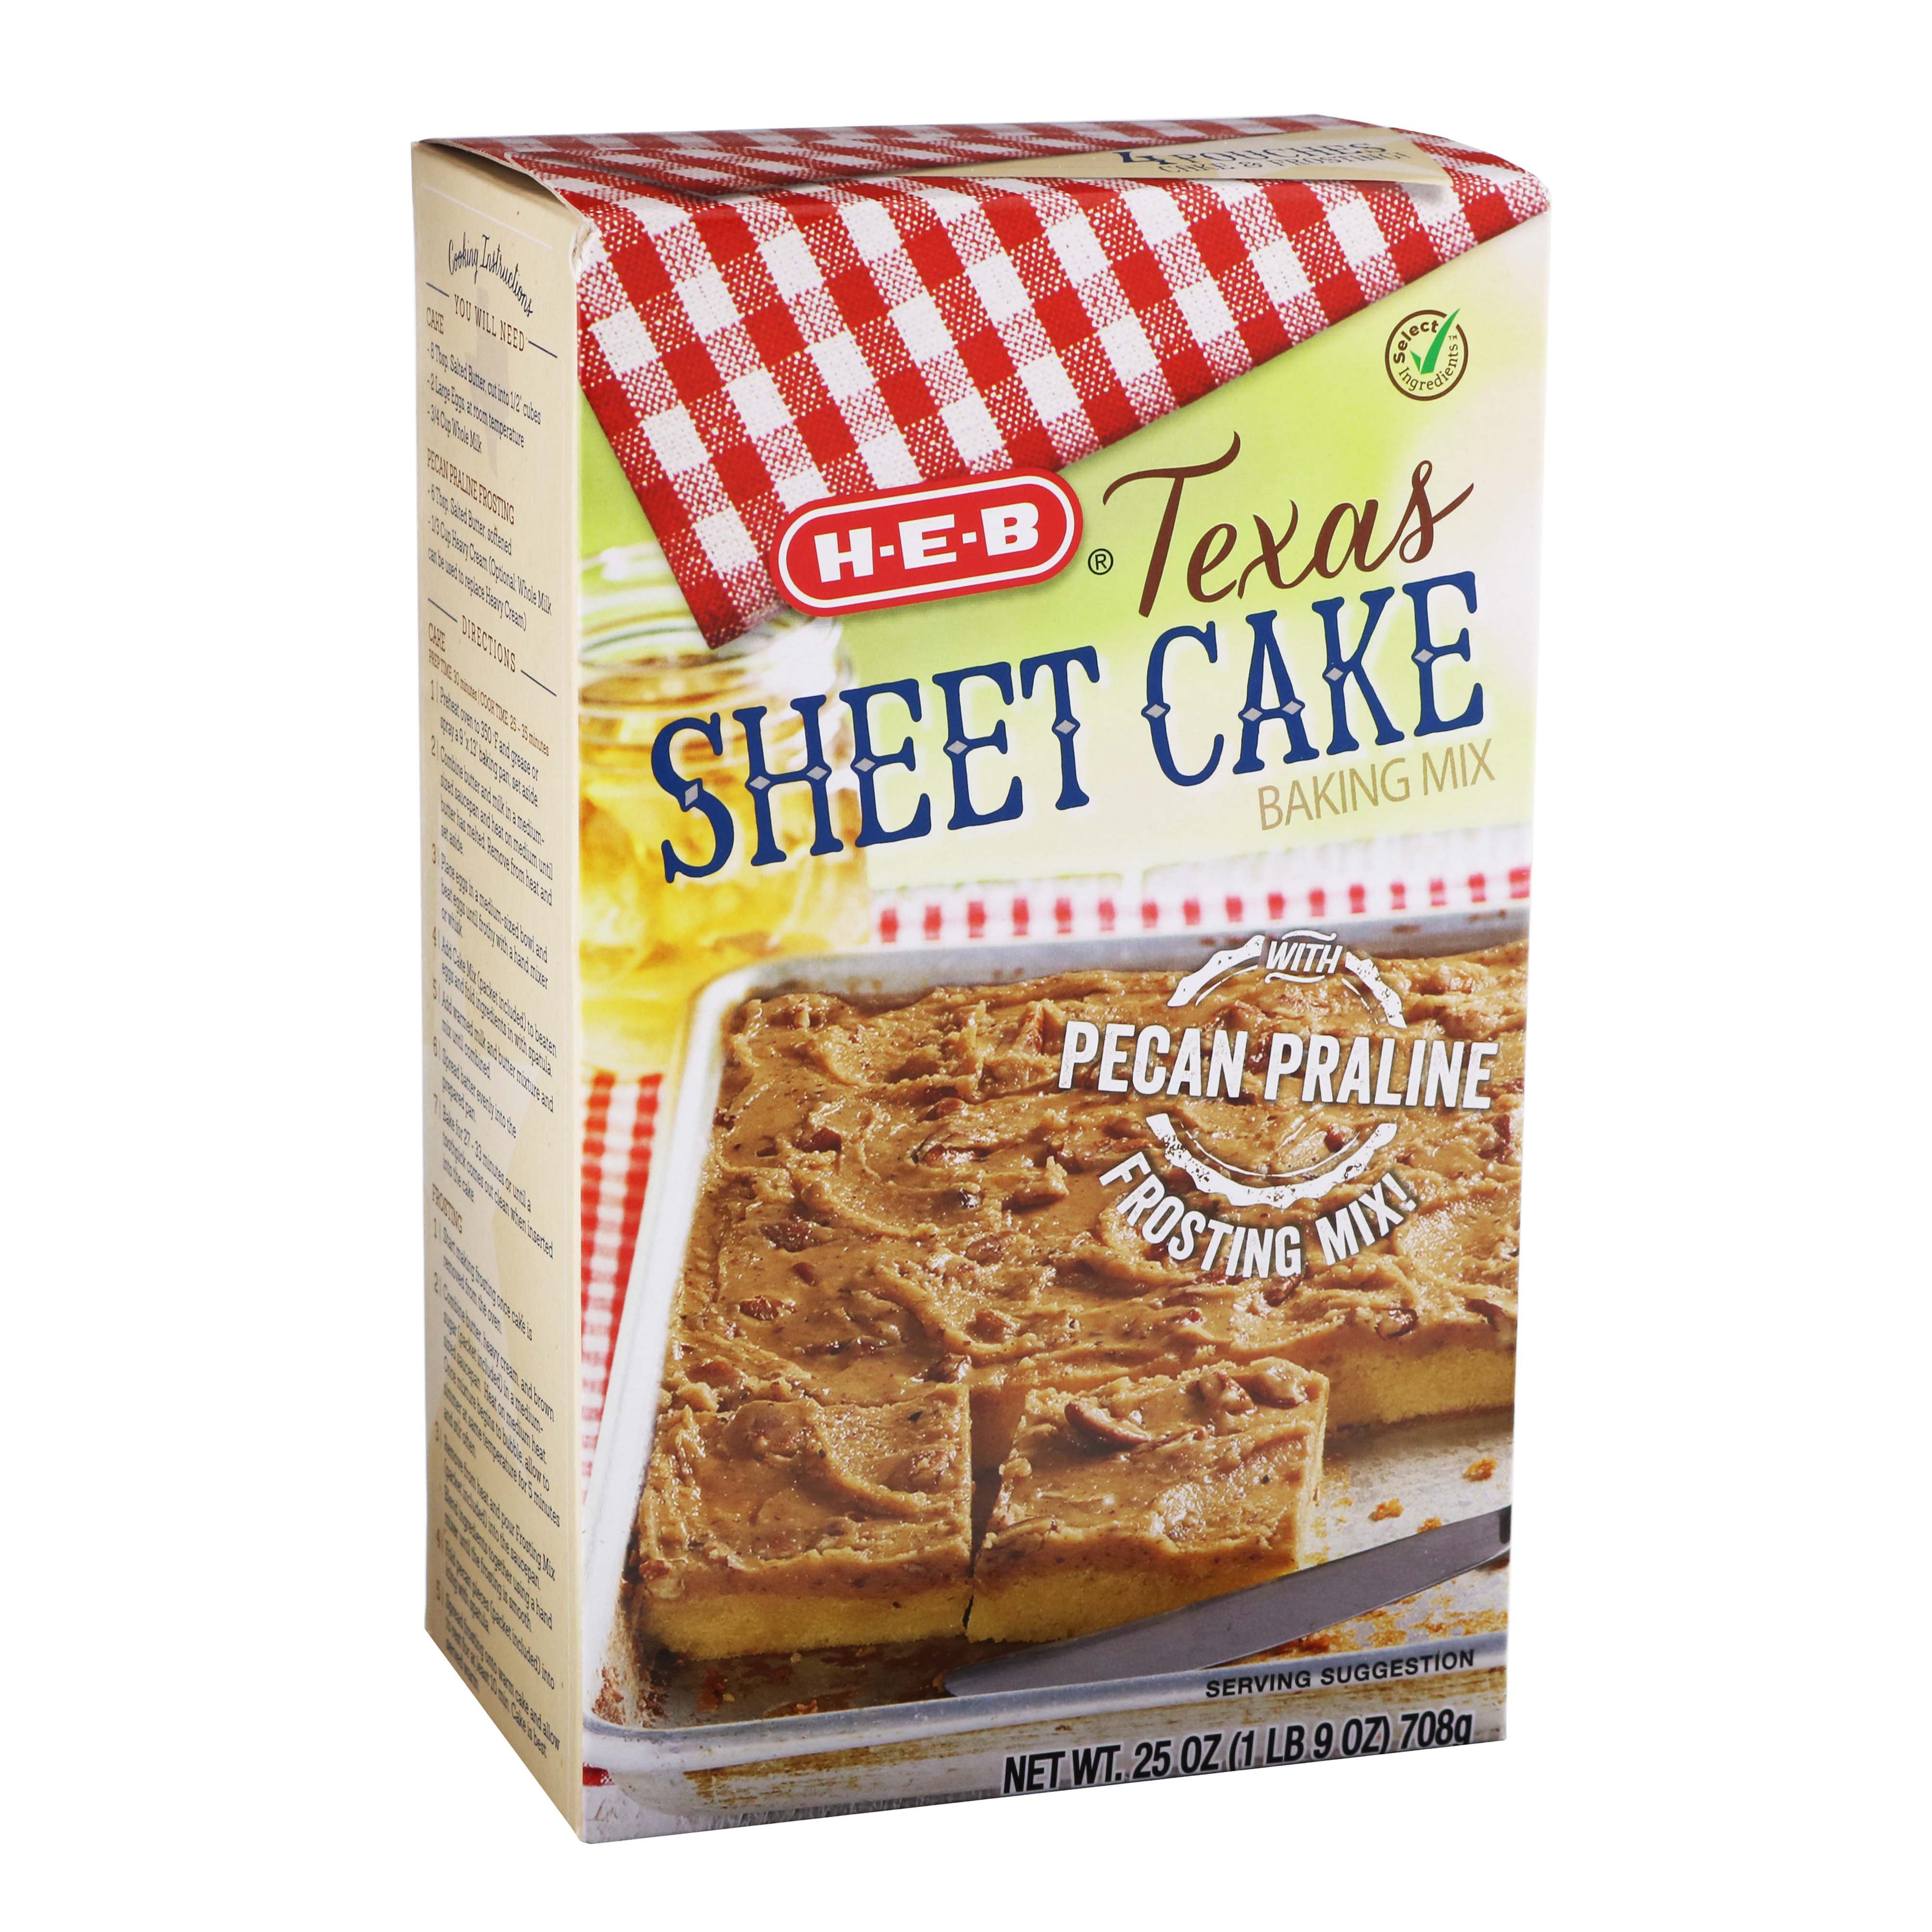 H-E-B Select Ingredients Pecan Praline Texas Sheet Cake - Shop Baking